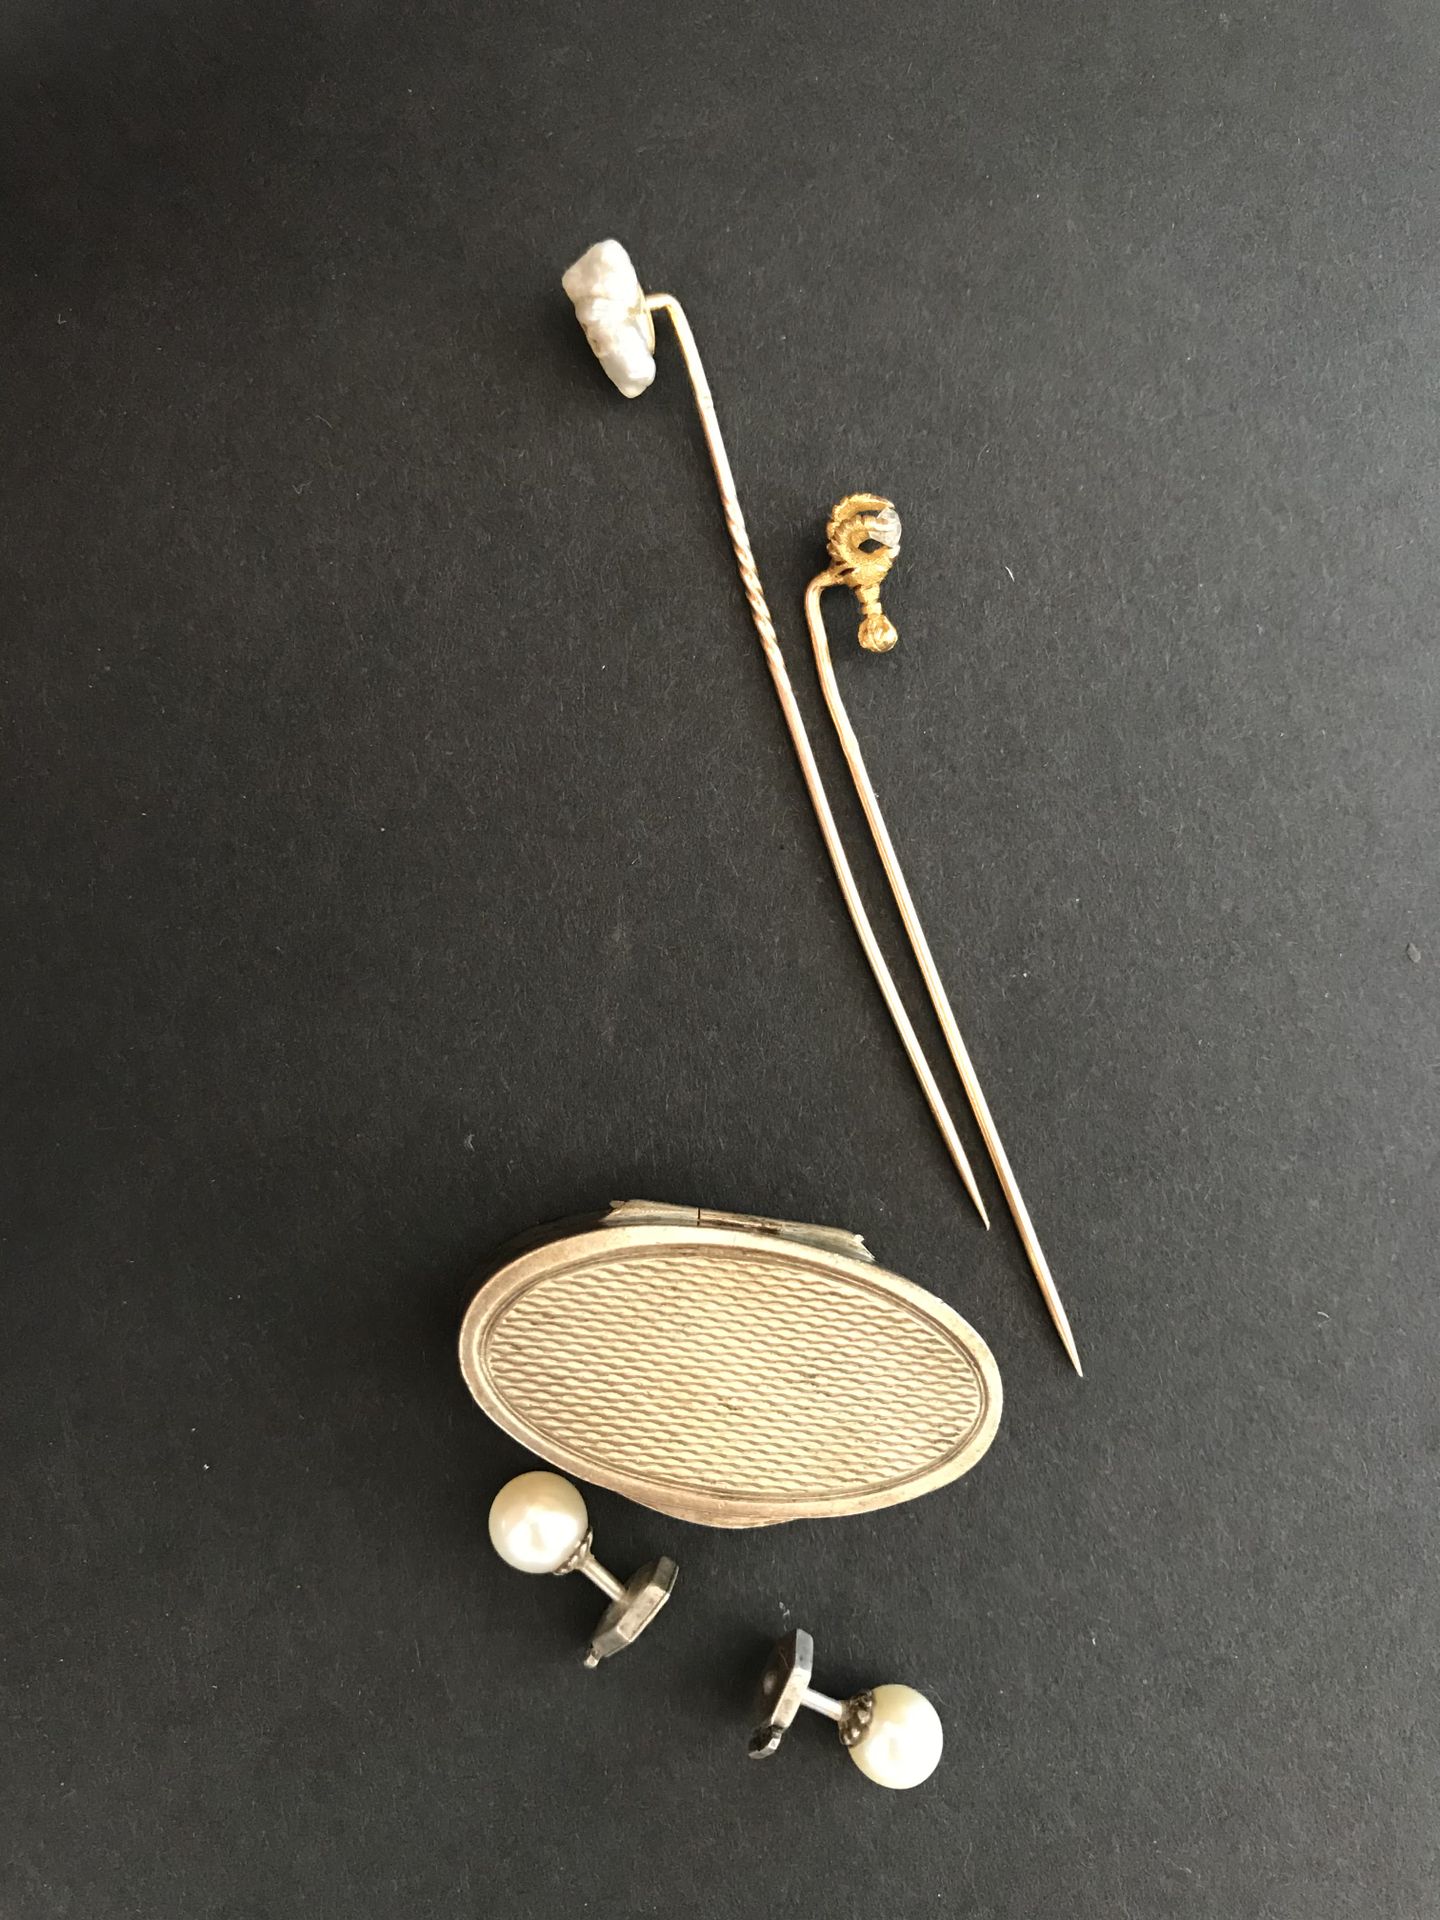 Null 两个项圈销子

黄金材质

重量：3克

一个小盒子和一对银色珍珠的耳环。

重量：13克